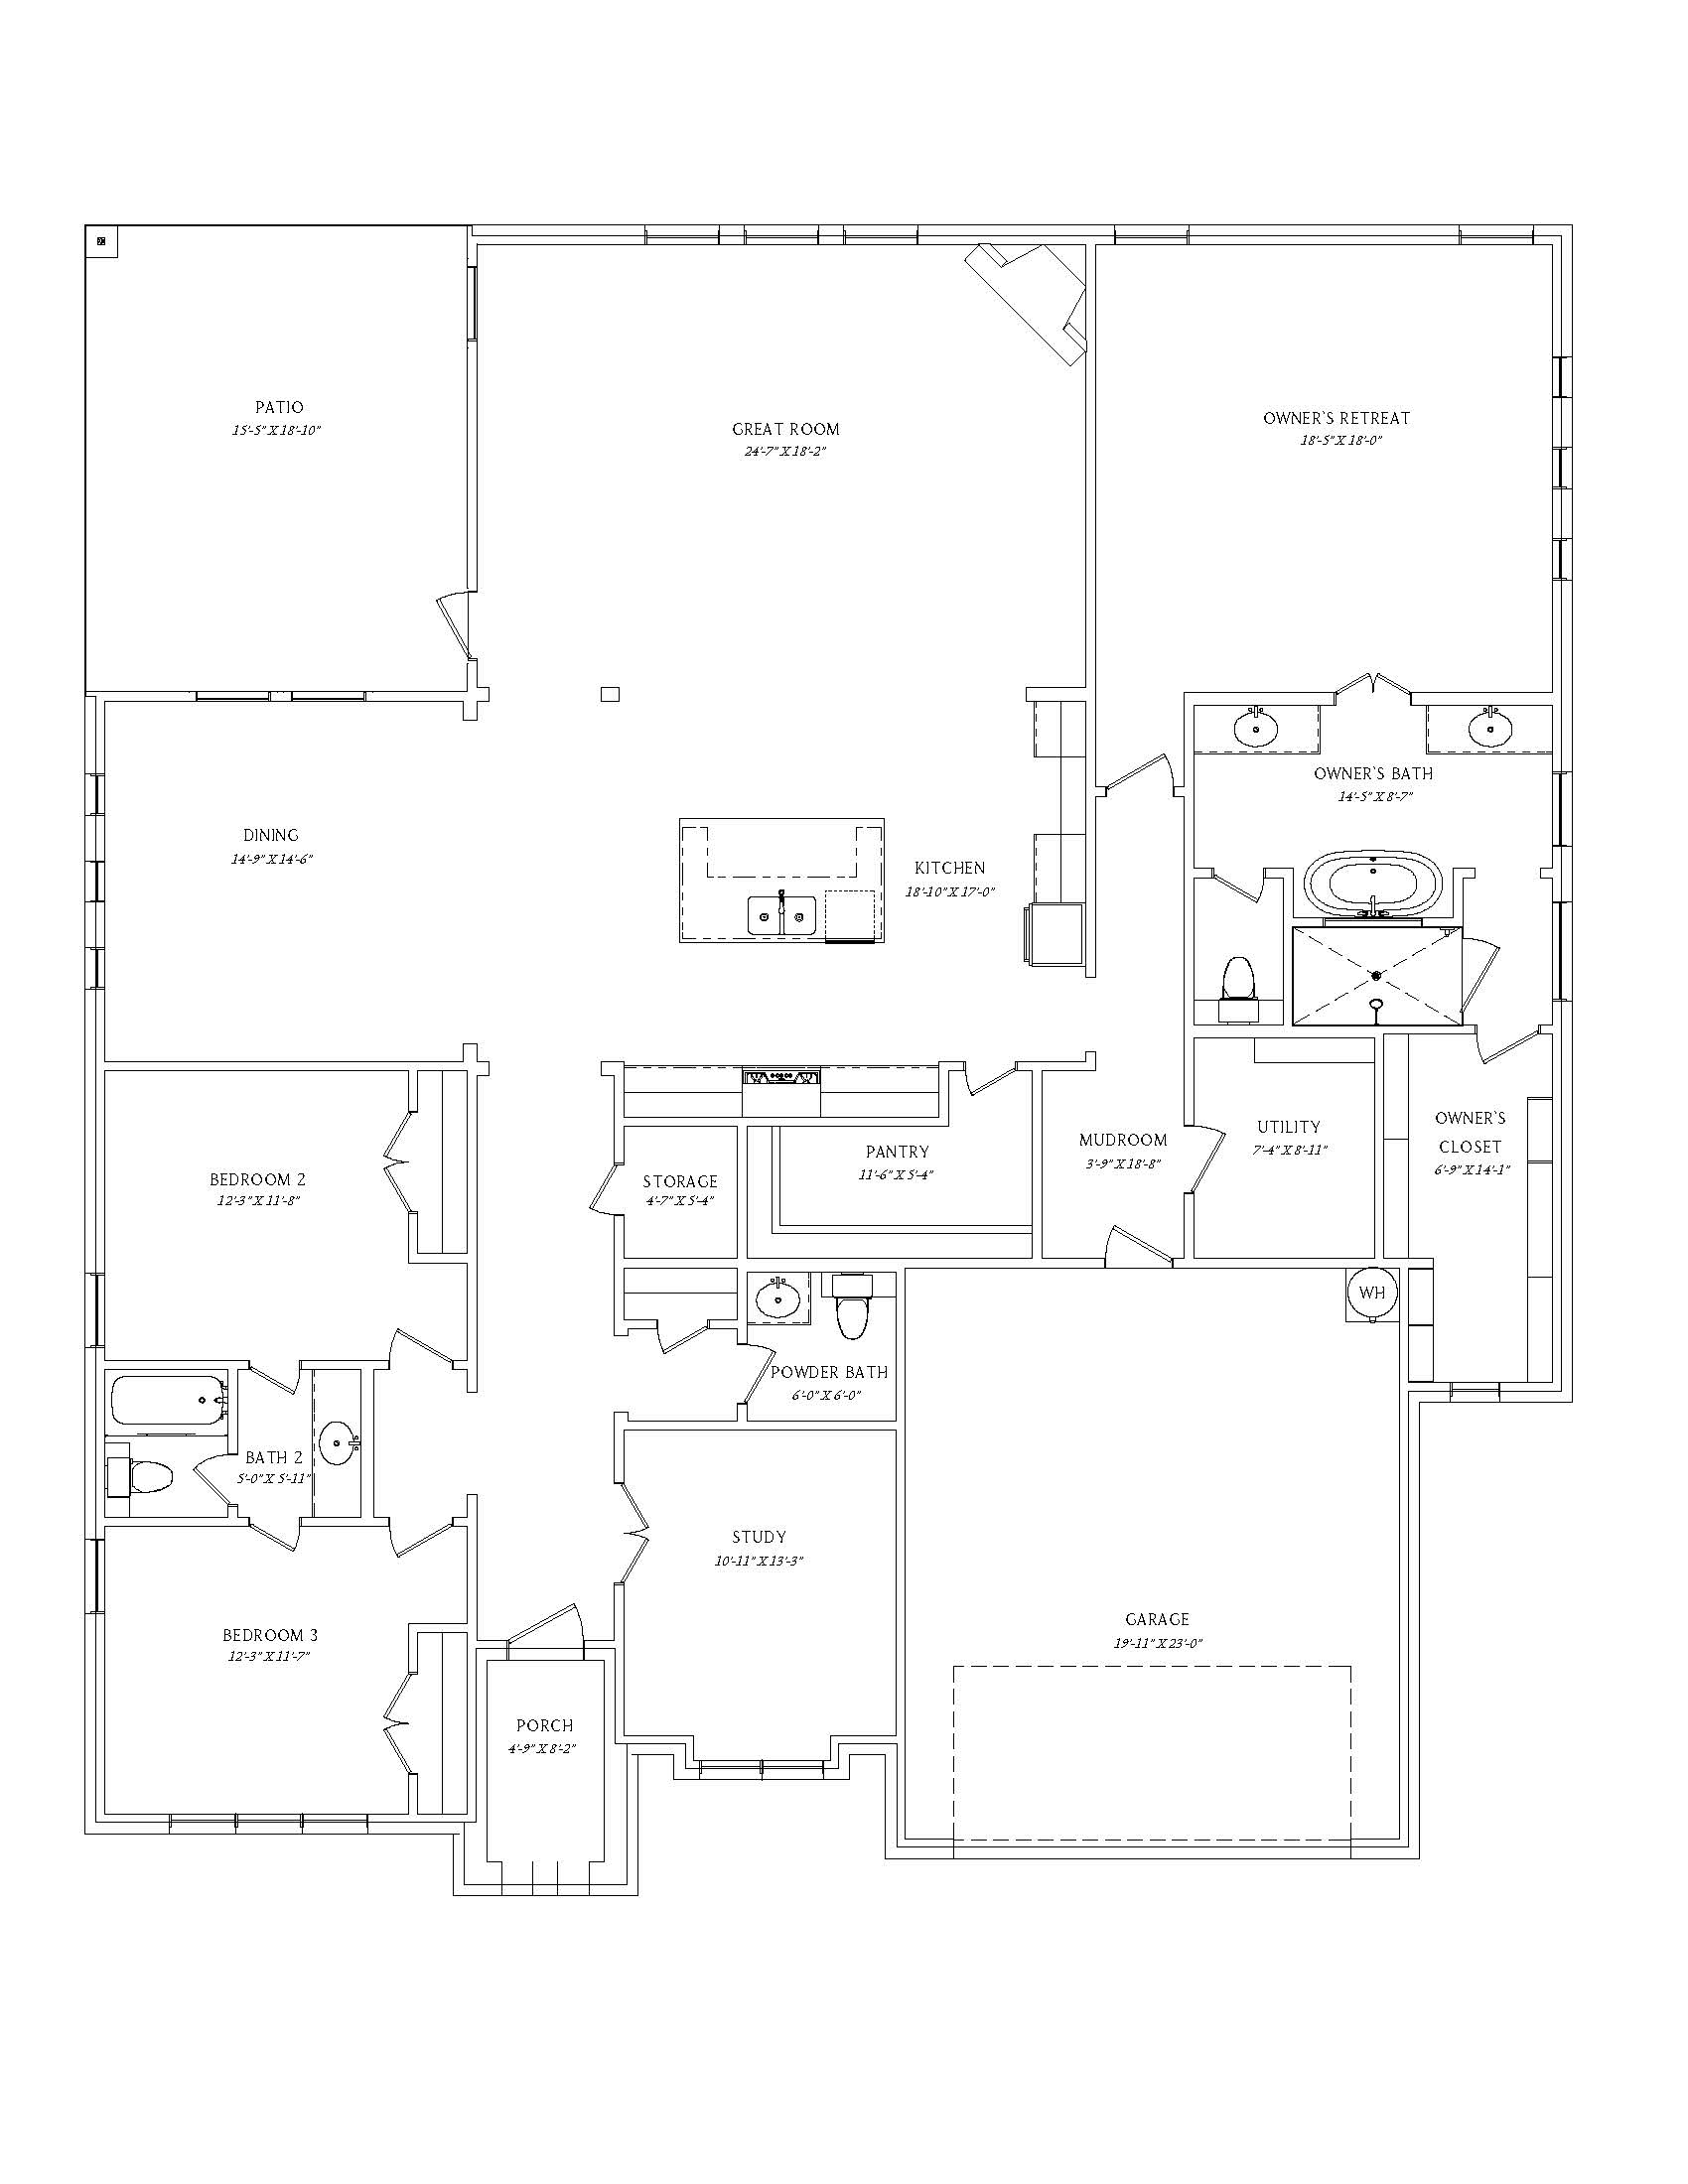 7125 Aves St - Truitt Floor Plan